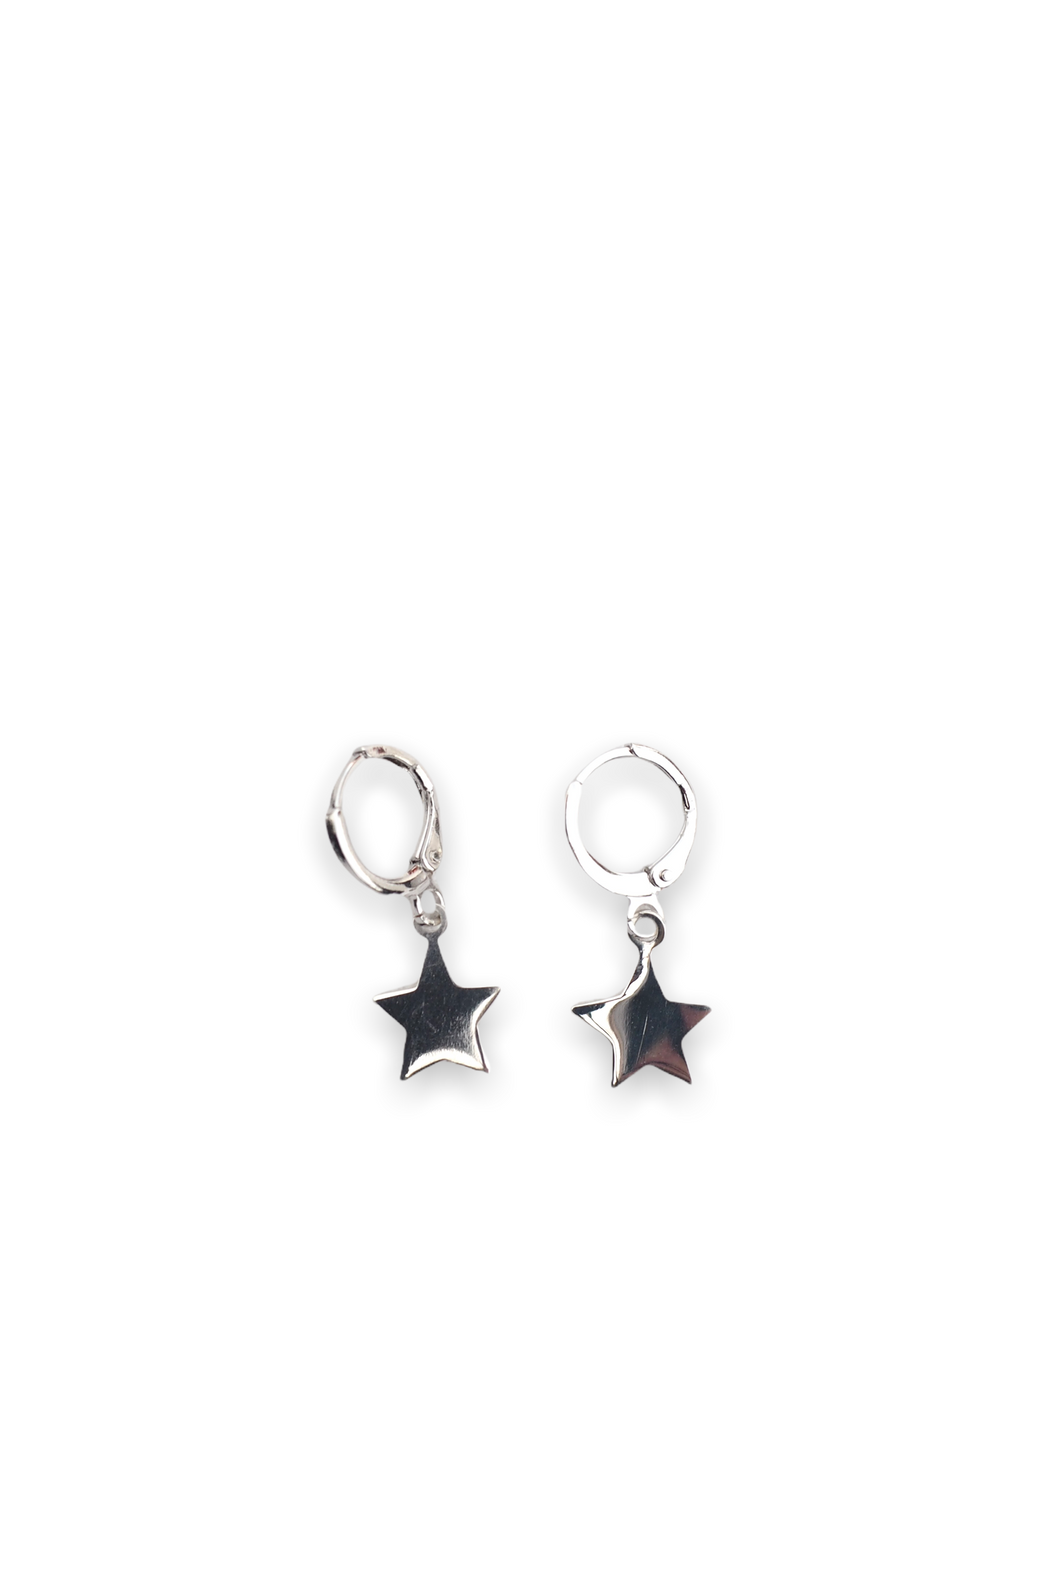 Gold or Sterling Silver Star huggie hoop earrings